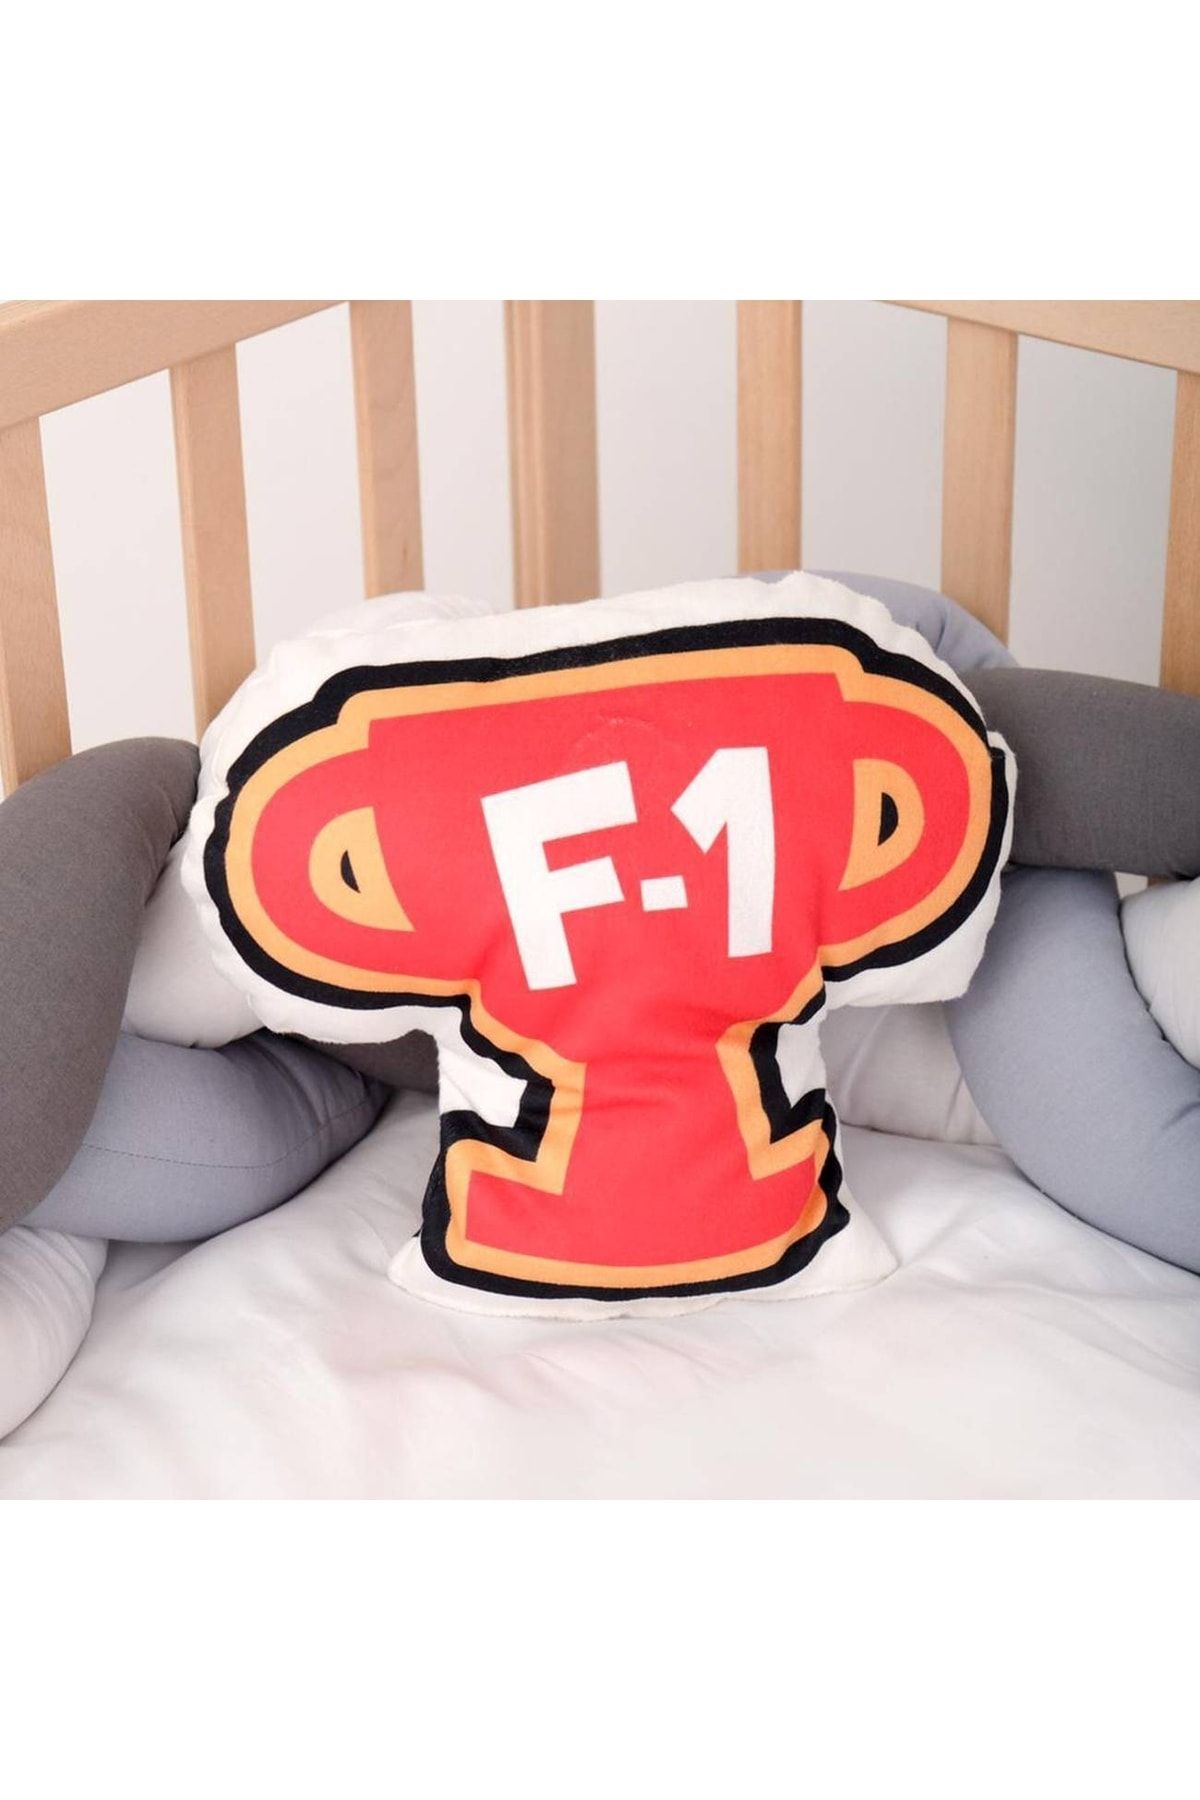 HET Concept Kırmızı F-1 Bebek Çocuk Odası Uyku Arkadaşı Peluş Oyuncaklar Model 093